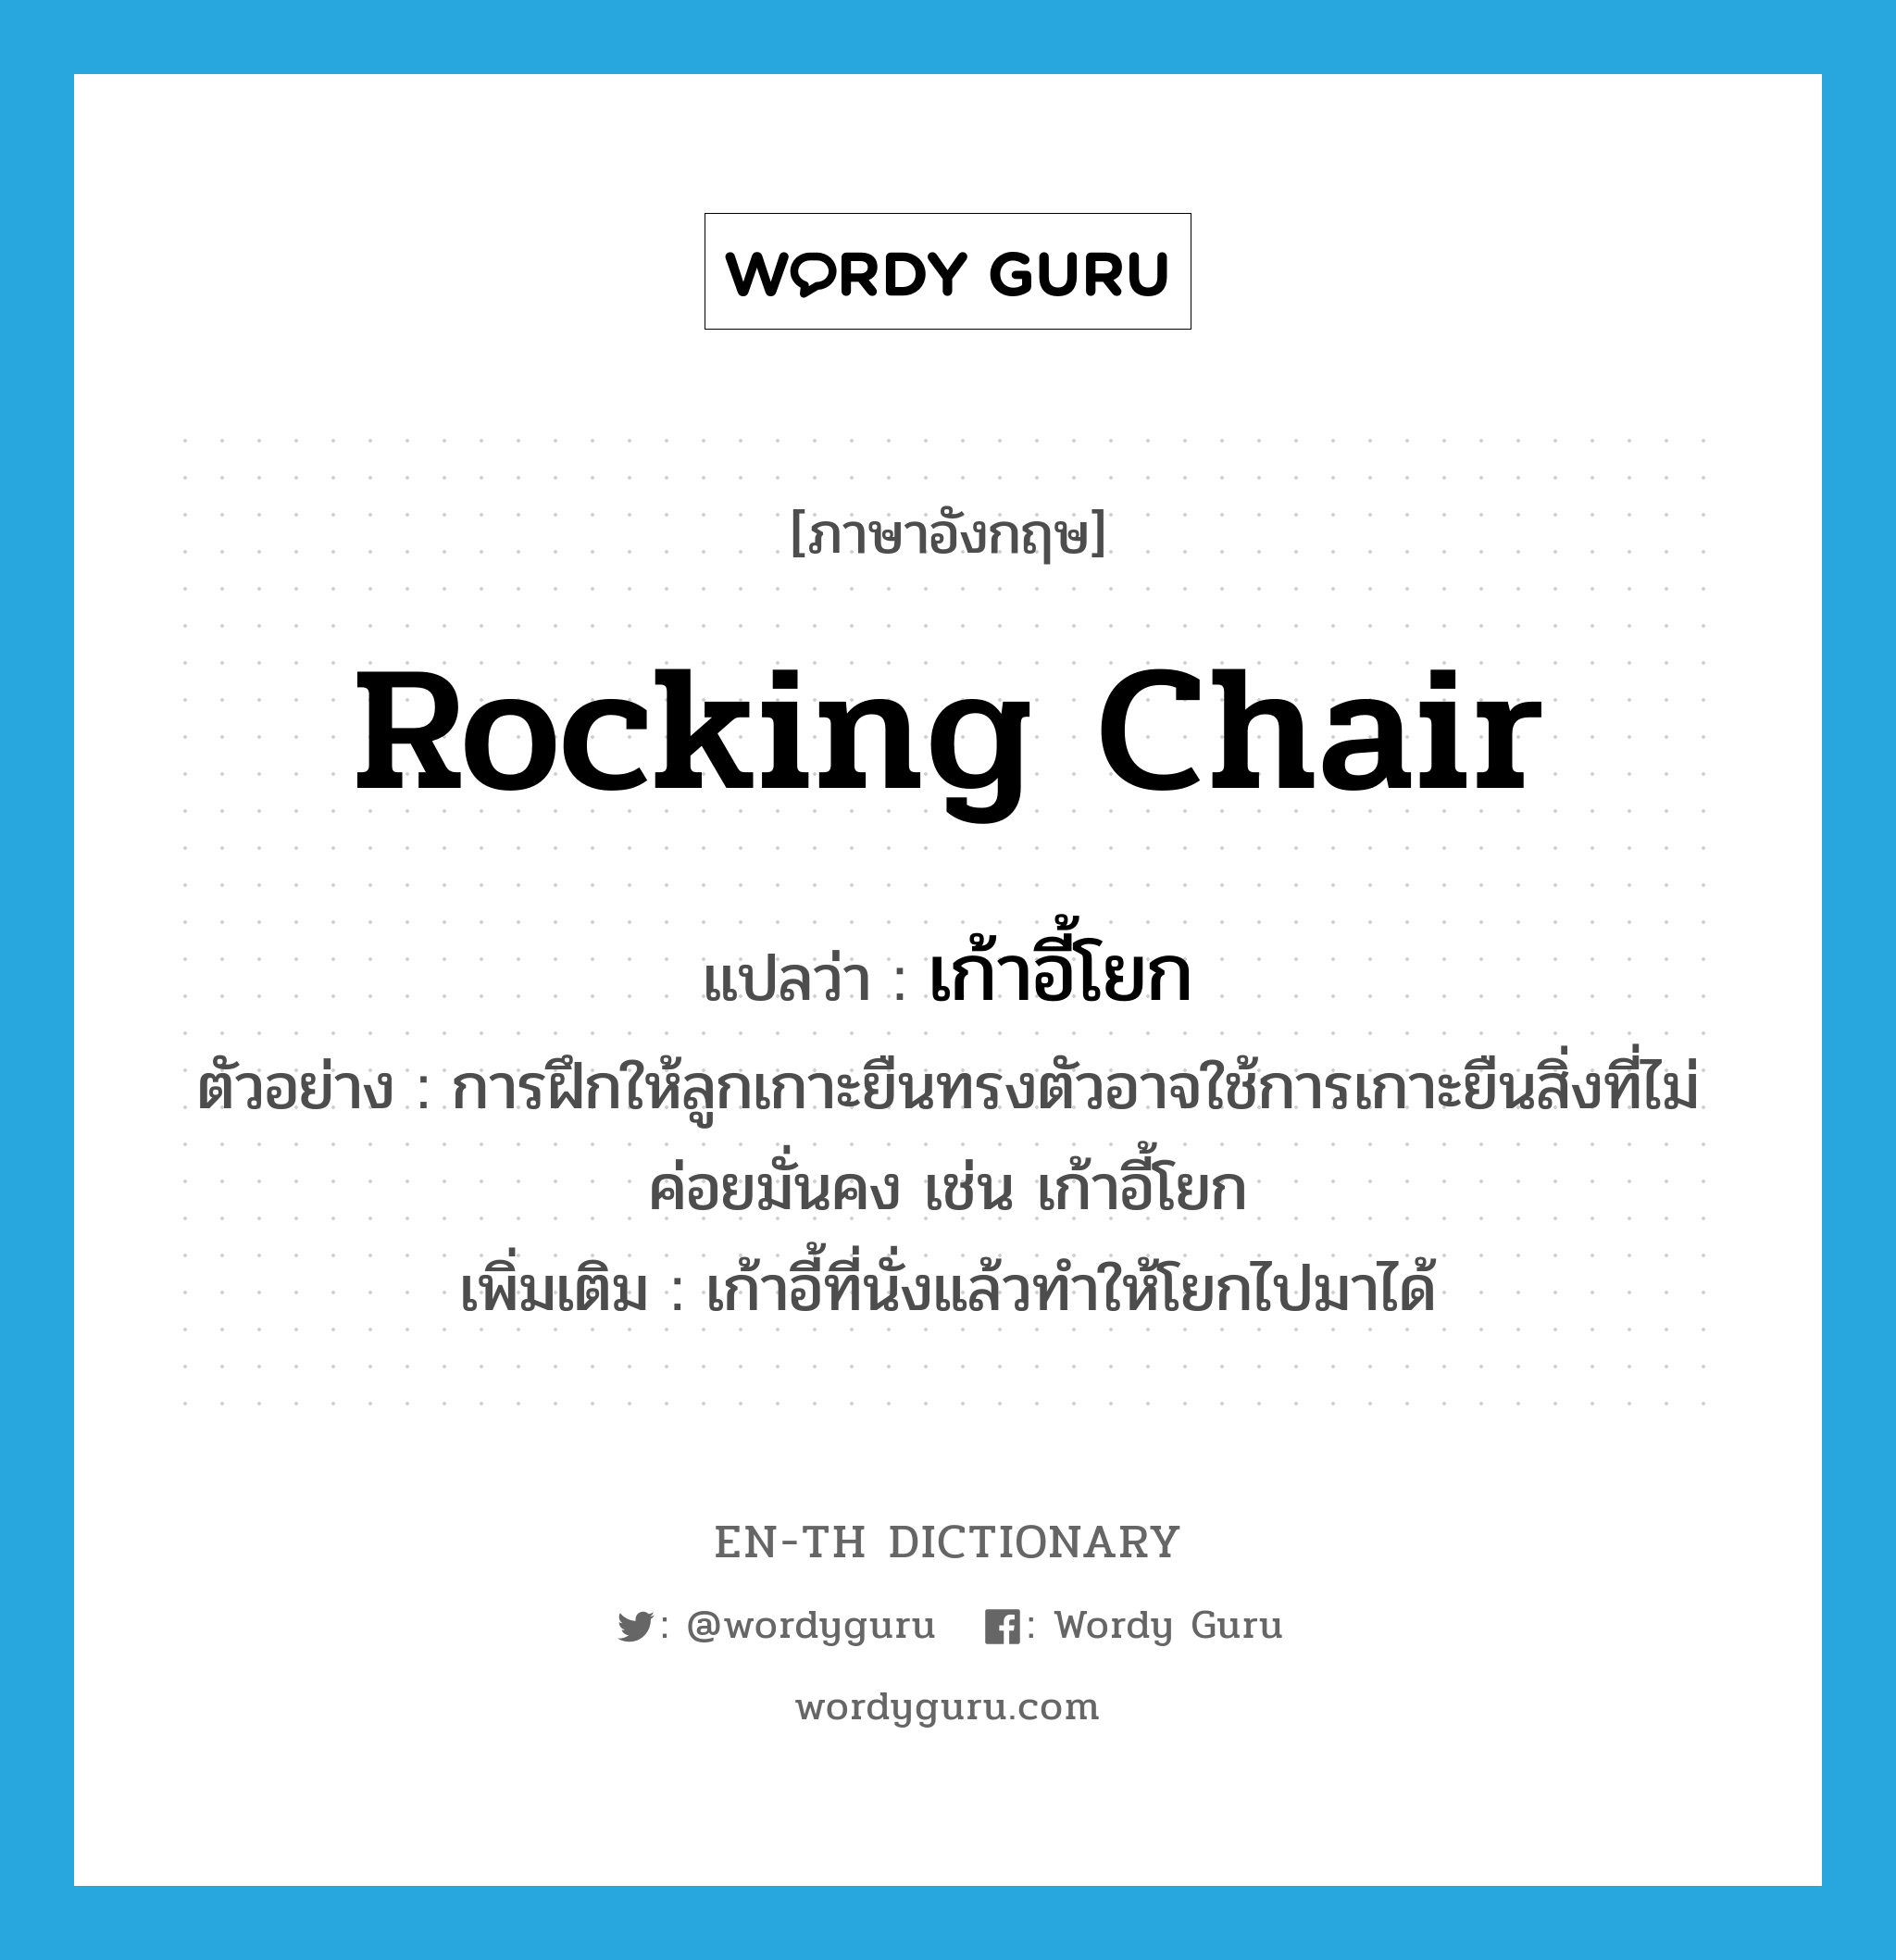 rocking chair แปลว่า?, คำศัพท์ภาษาอังกฤษ rocking chair แปลว่า เก้าอี้โยก ประเภท N ตัวอย่าง การฝึกให้ลูกเกาะยืนทรงตัวอาจใช้การเกาะยืนสิ่งที่ไม่ค่อยมั่นคง เช่น เก้าอี้โยก เพิ่มเติม เก้าอี้ที่นั่งแล้วทำให้โยกไปมาได้ หมวด N